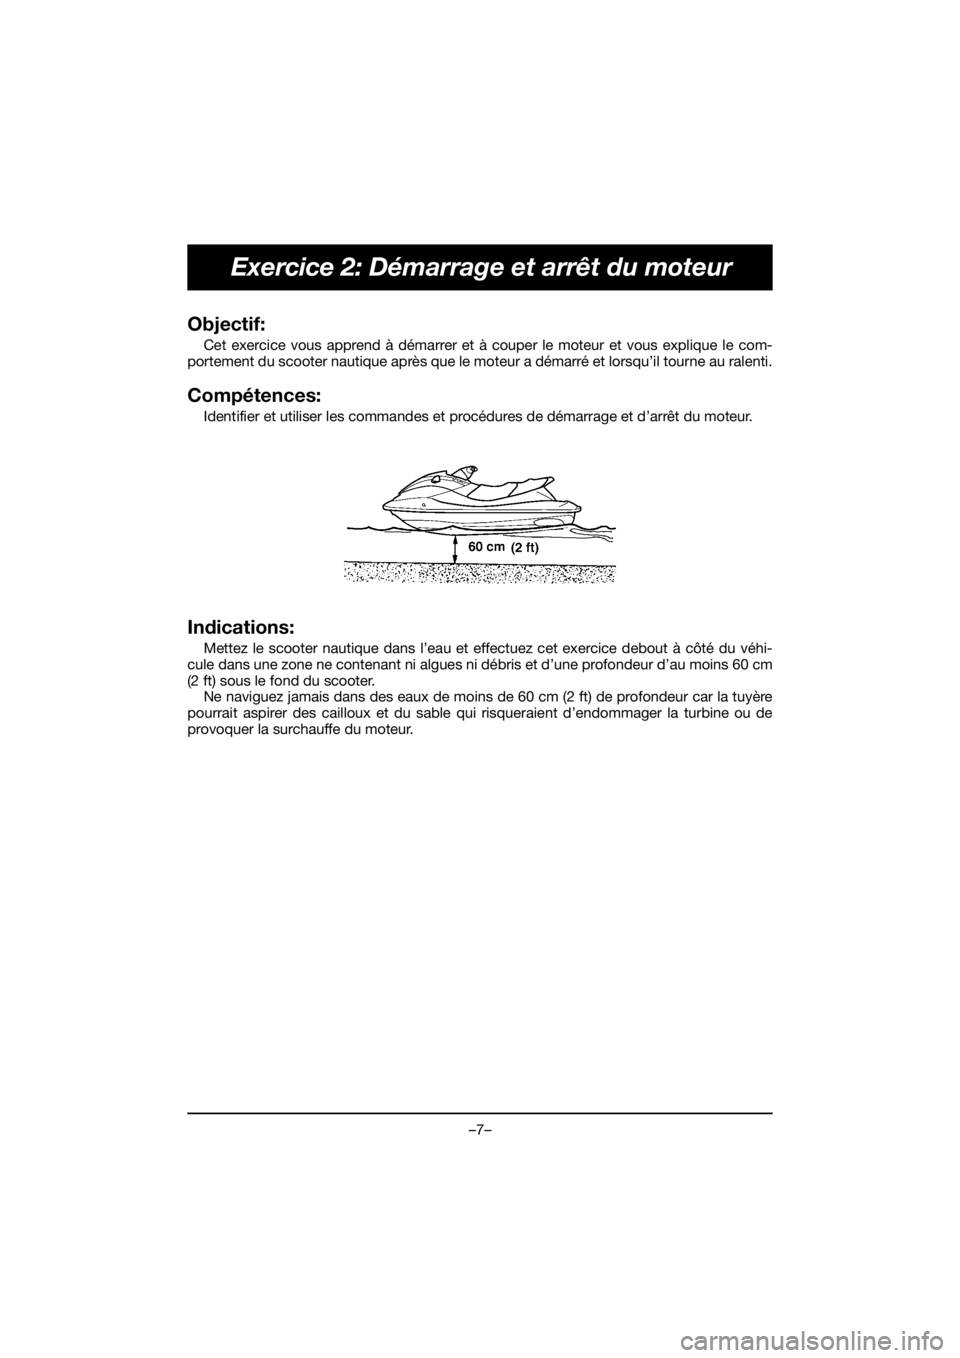 YAMAHA EX SPORT 2020  Notices Demploi (in French) –7–
Exercice 2: Démarrage et arrêt du moteur
Objectif: 
Cet exercice vous apprend à démarrer et à couper le moteur et vous explique le com-
portement du scooter nautique après que le moteur 